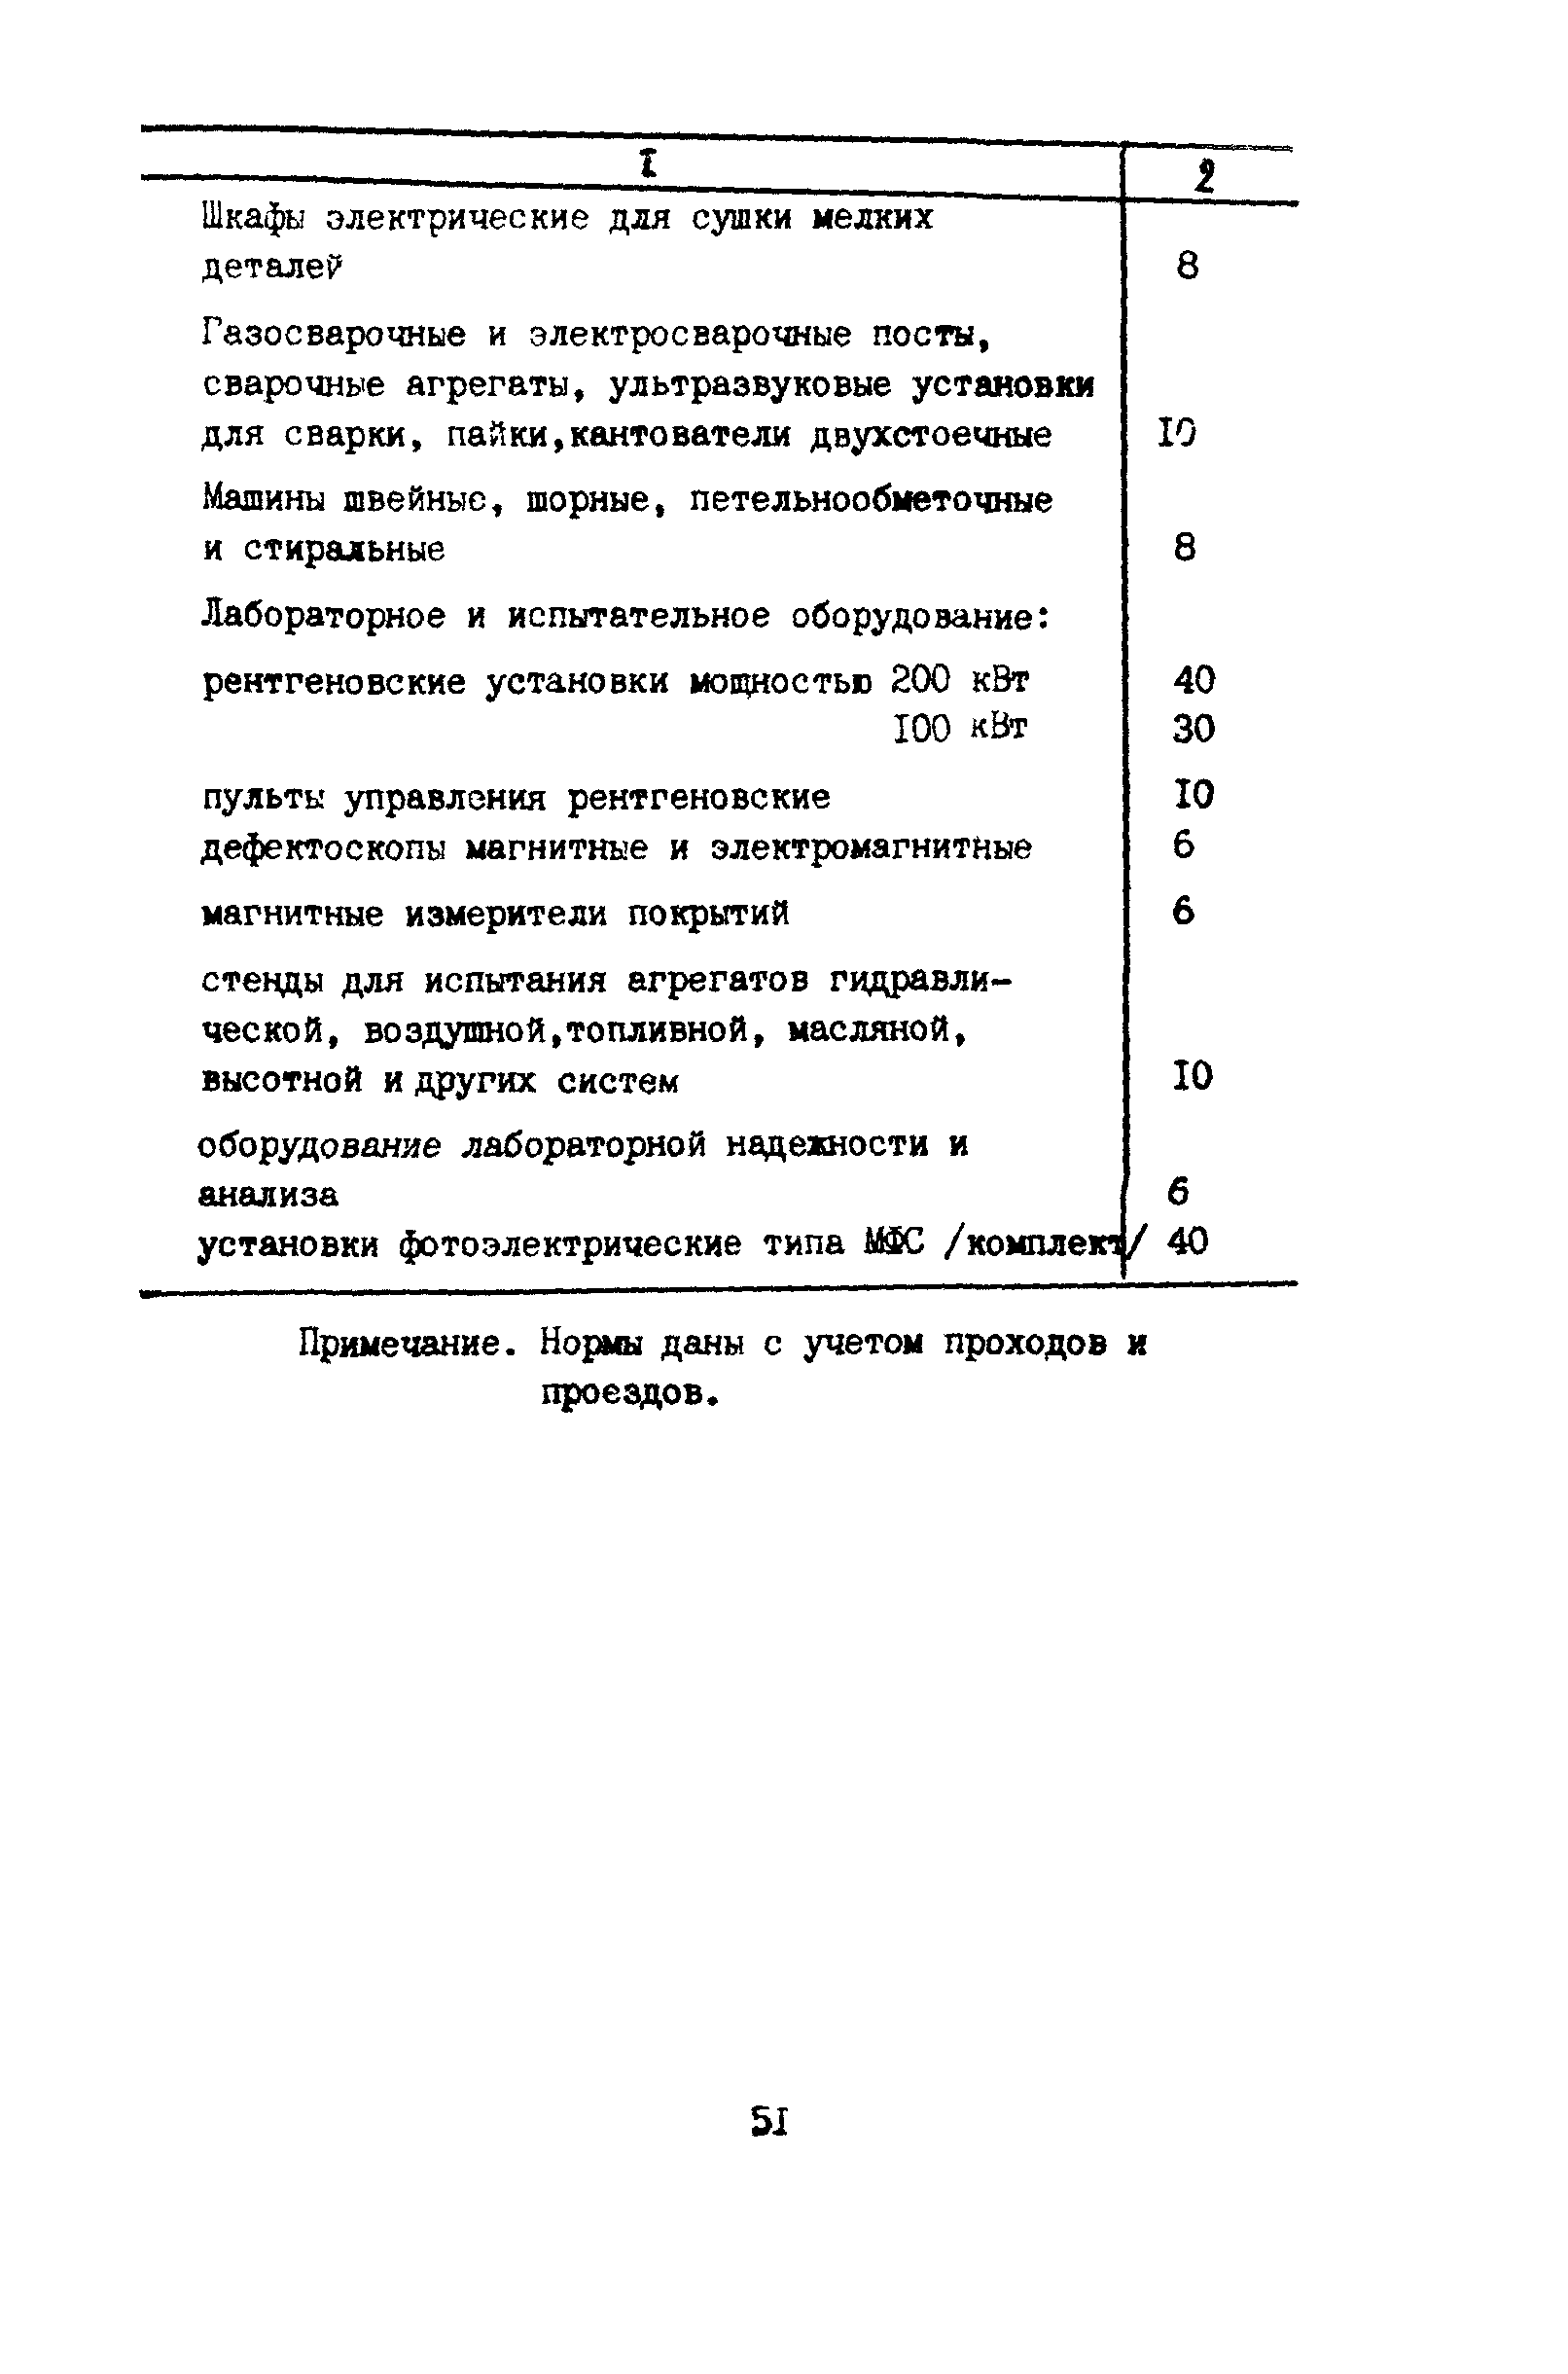 ВНТП 11-85/МГА